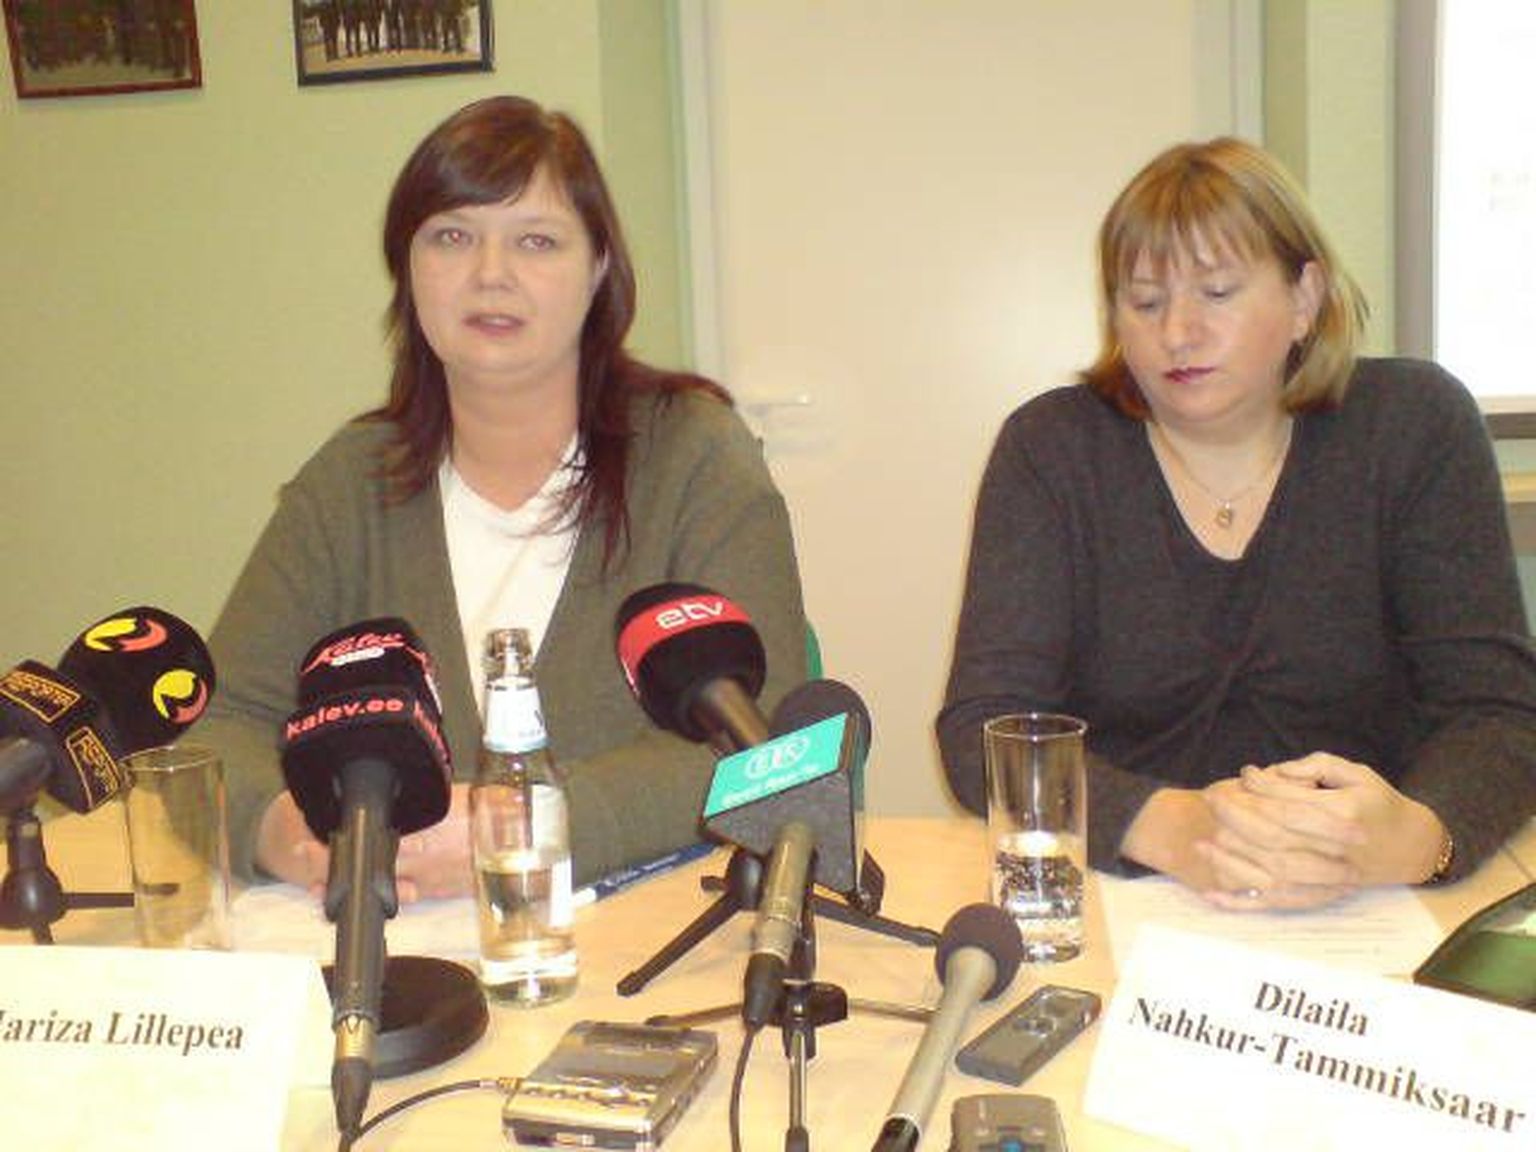 Viru ringkonnaprokuratuuri prokurör Mariza Lillepea ja juhtivprokurör Dilaila Nahkur-Tammiksaar tänasel pressikonverentsil, kus avaldati Oru nelikmõrva esialgne versioon.